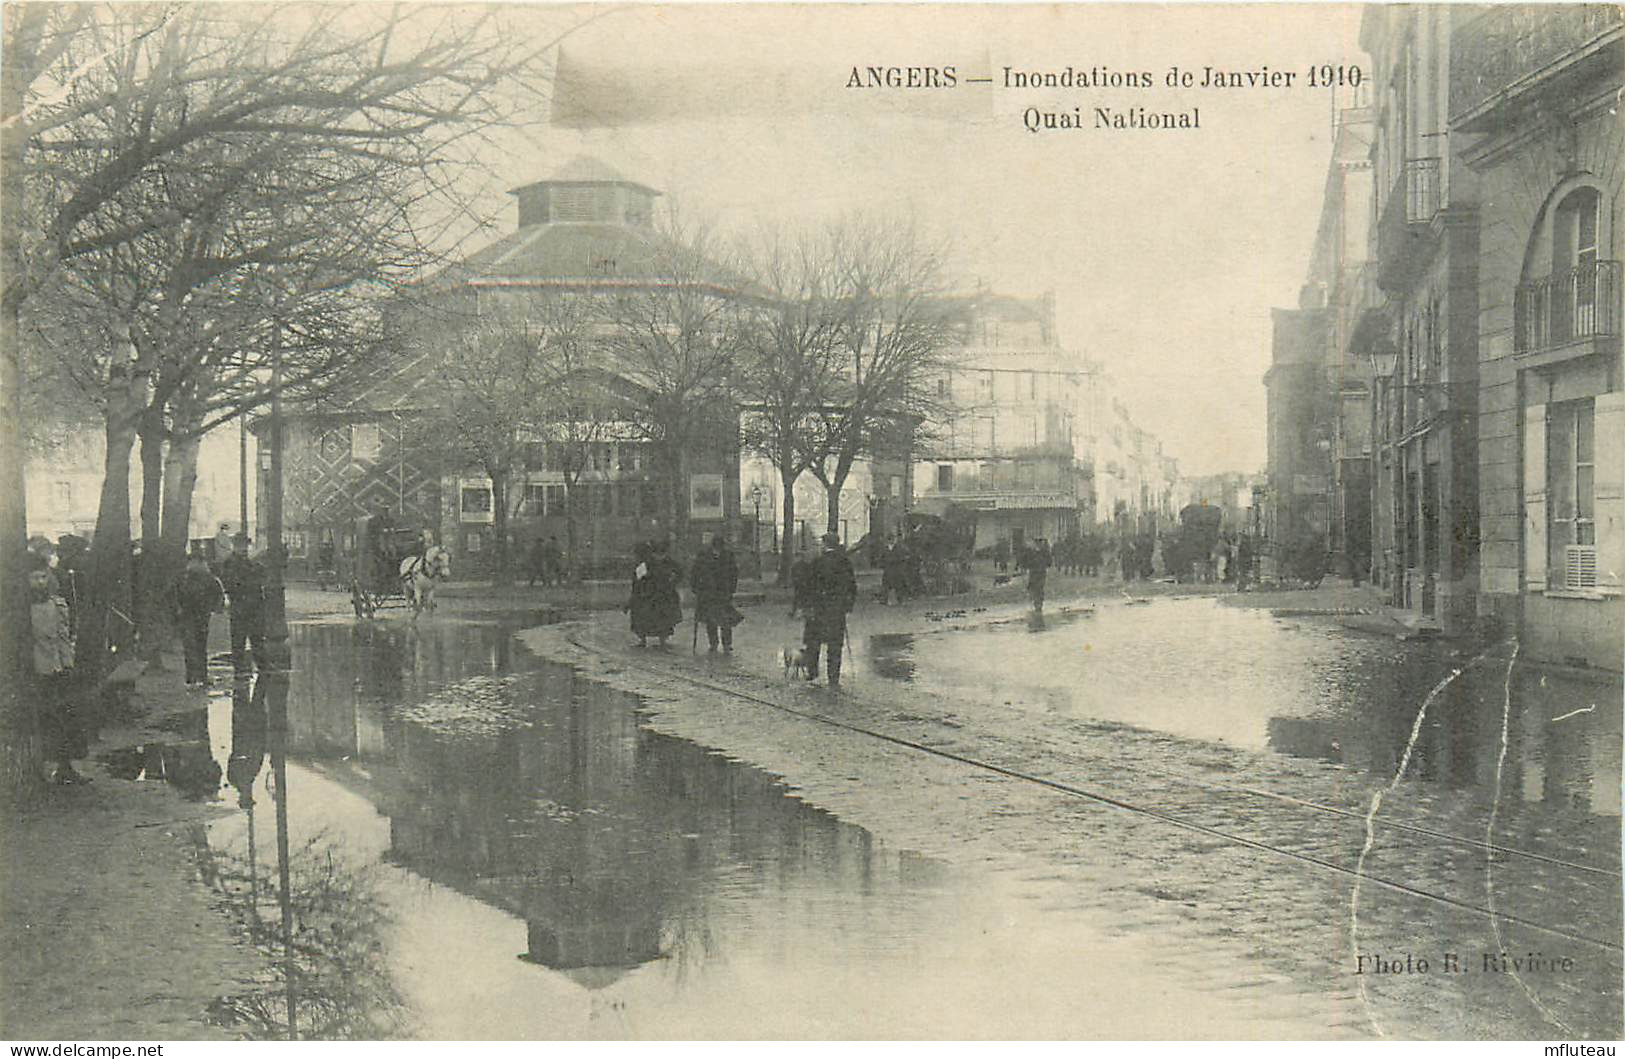 49* ANGERS  Crue 1910 – Quai National           RL37.0305 - Angers